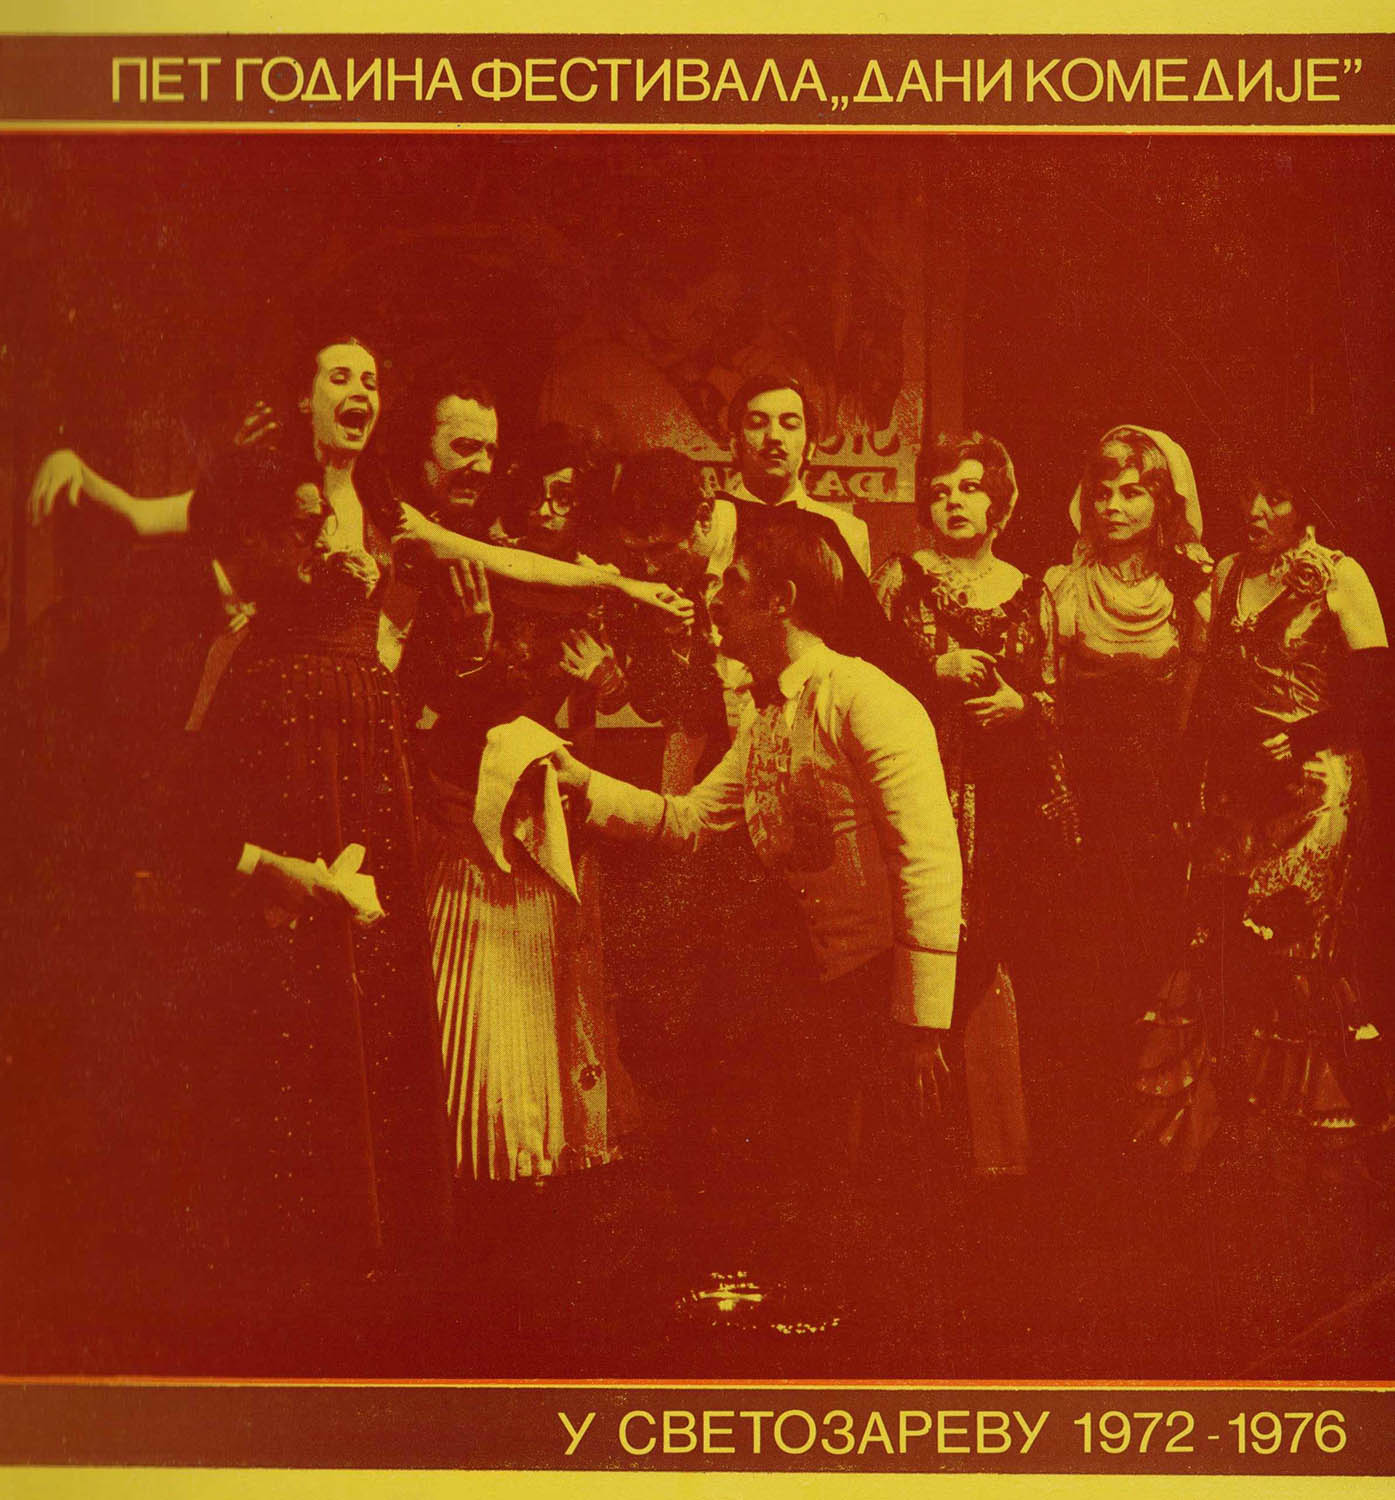 Пет година фестивала “Дани комедије” у Светозареву 1972-1976